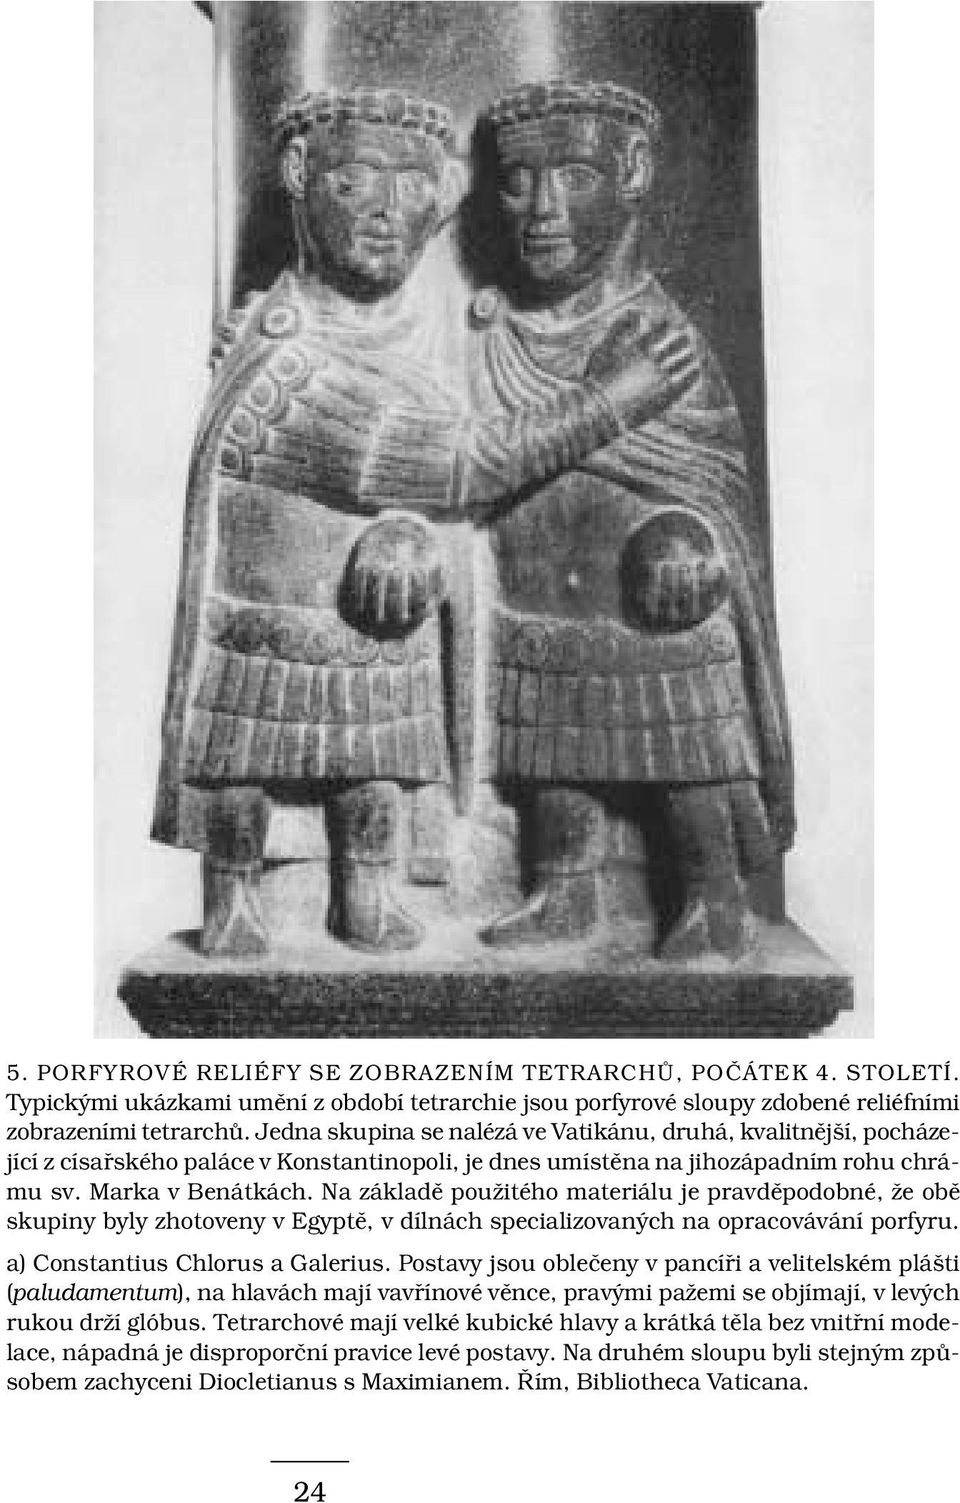 Na základě použitého materiálu je pravděpodobné, že obě skupiny byly zhotoveny v Egyptě, v dílnách specializovaných na opracovávání porfyru. a) Constantius Chlorus a Galerius.